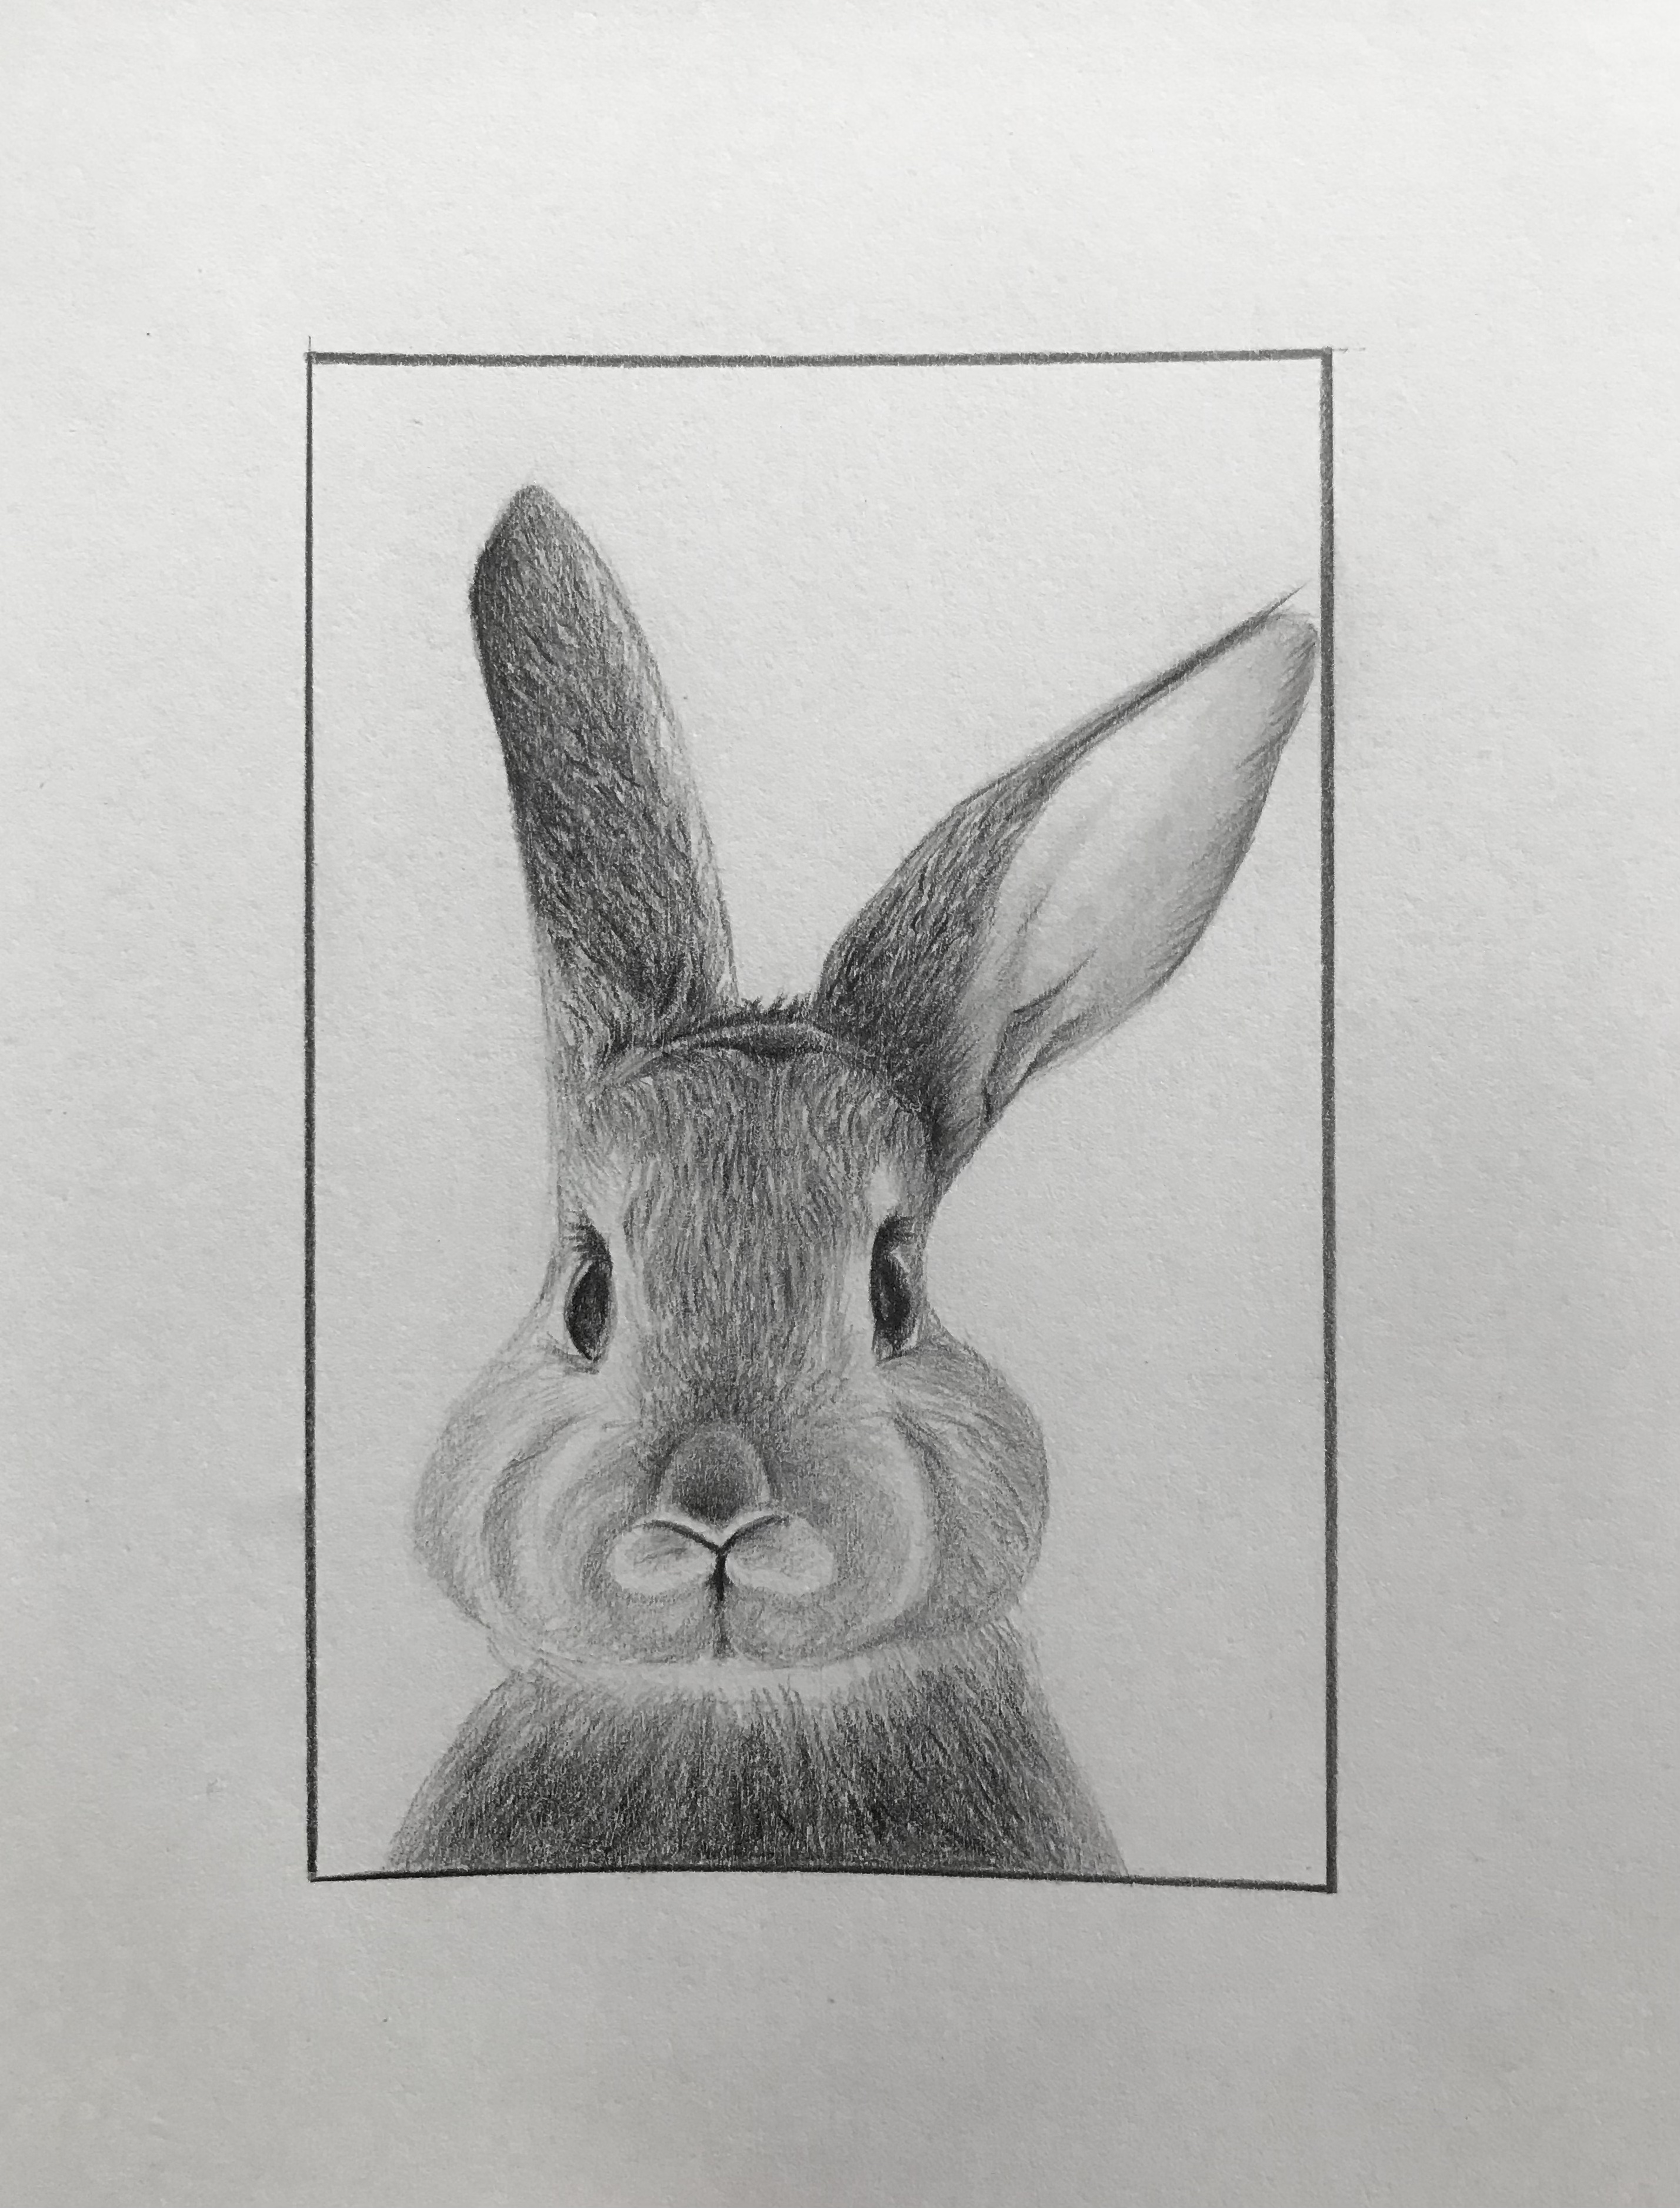 bunny pencil sketch : r/drawing